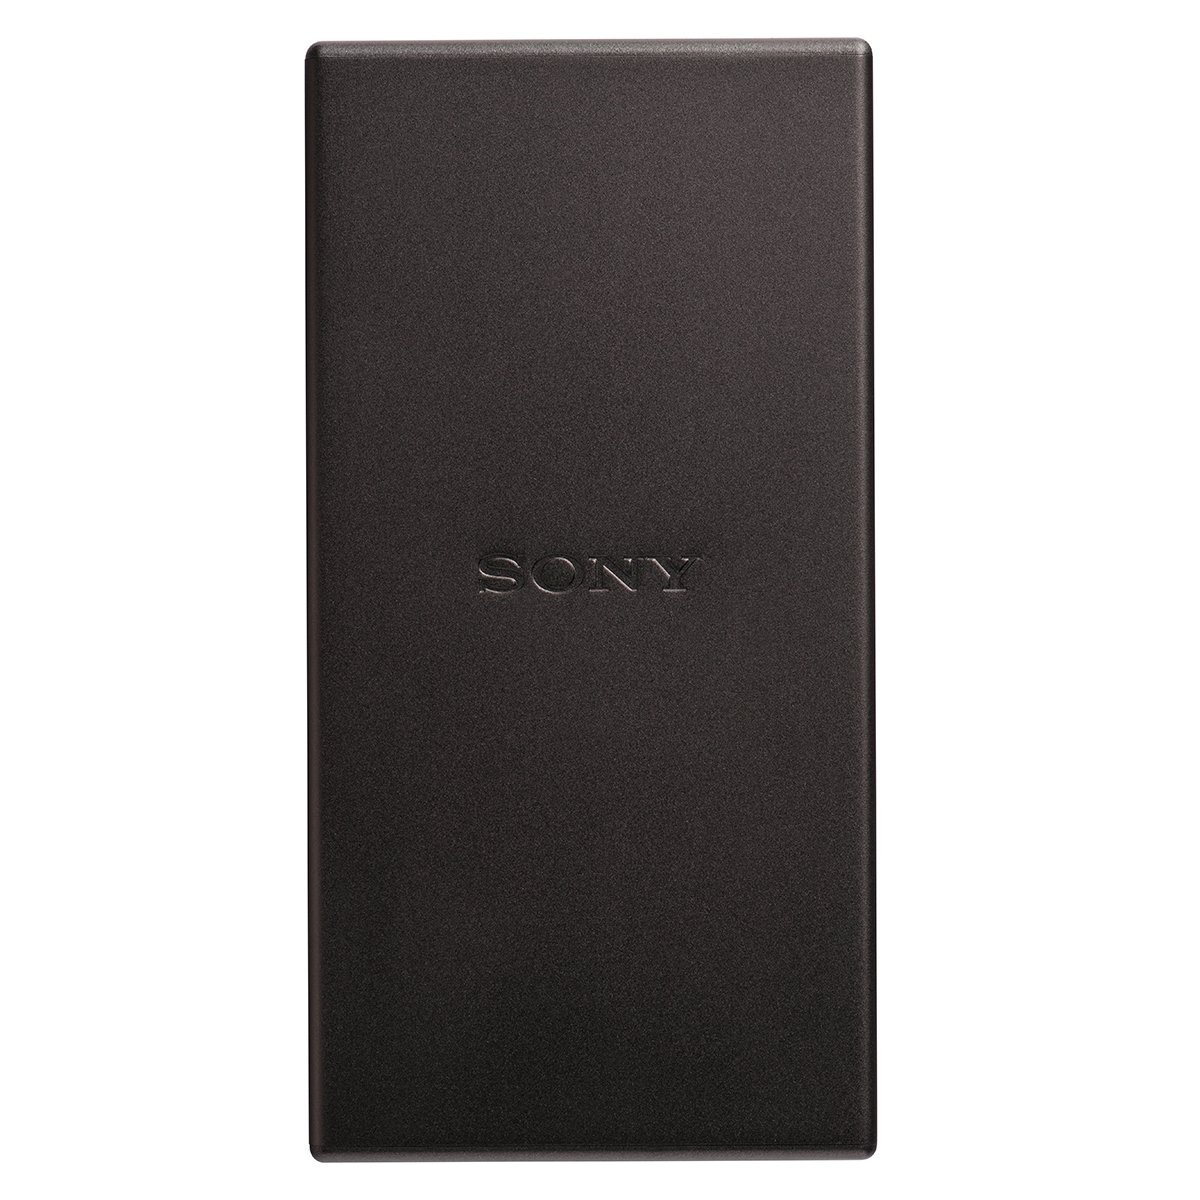 Cargador Portatil Sony Type C 5000 Mah